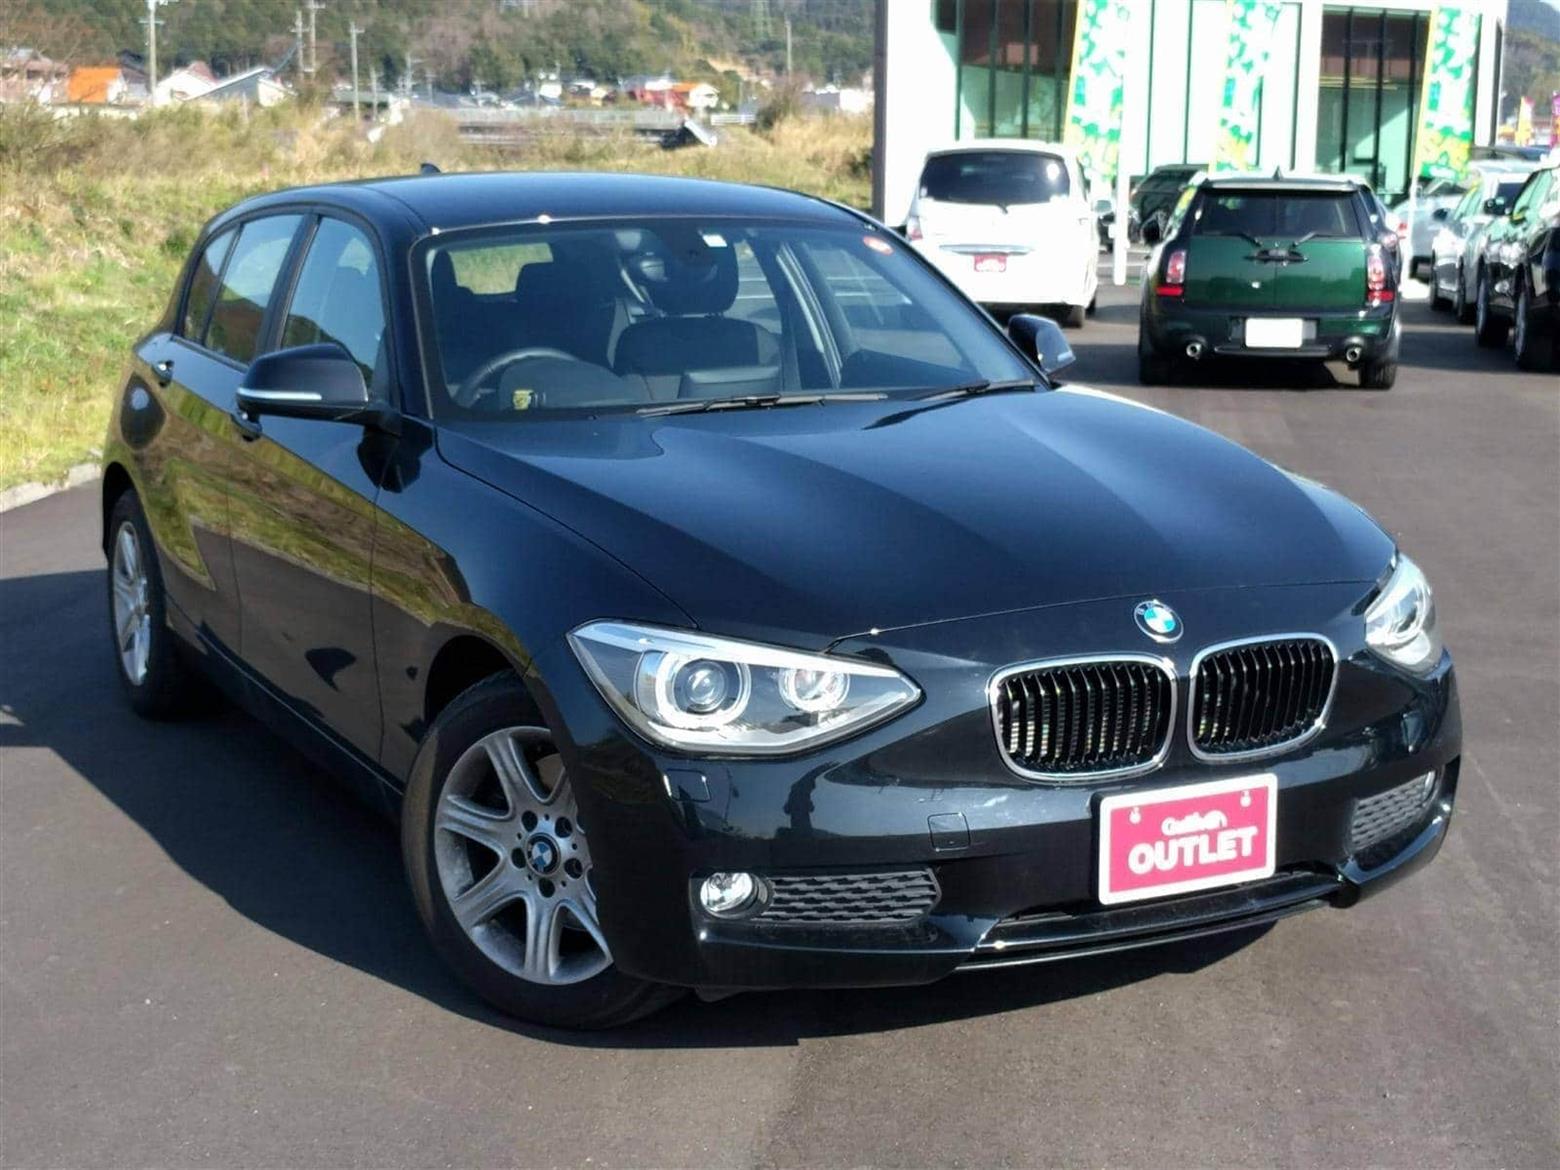 BMW,1シリーズ,116i,2014年式(平成26年式),黒,ID52374518 中古車検索のガリバー